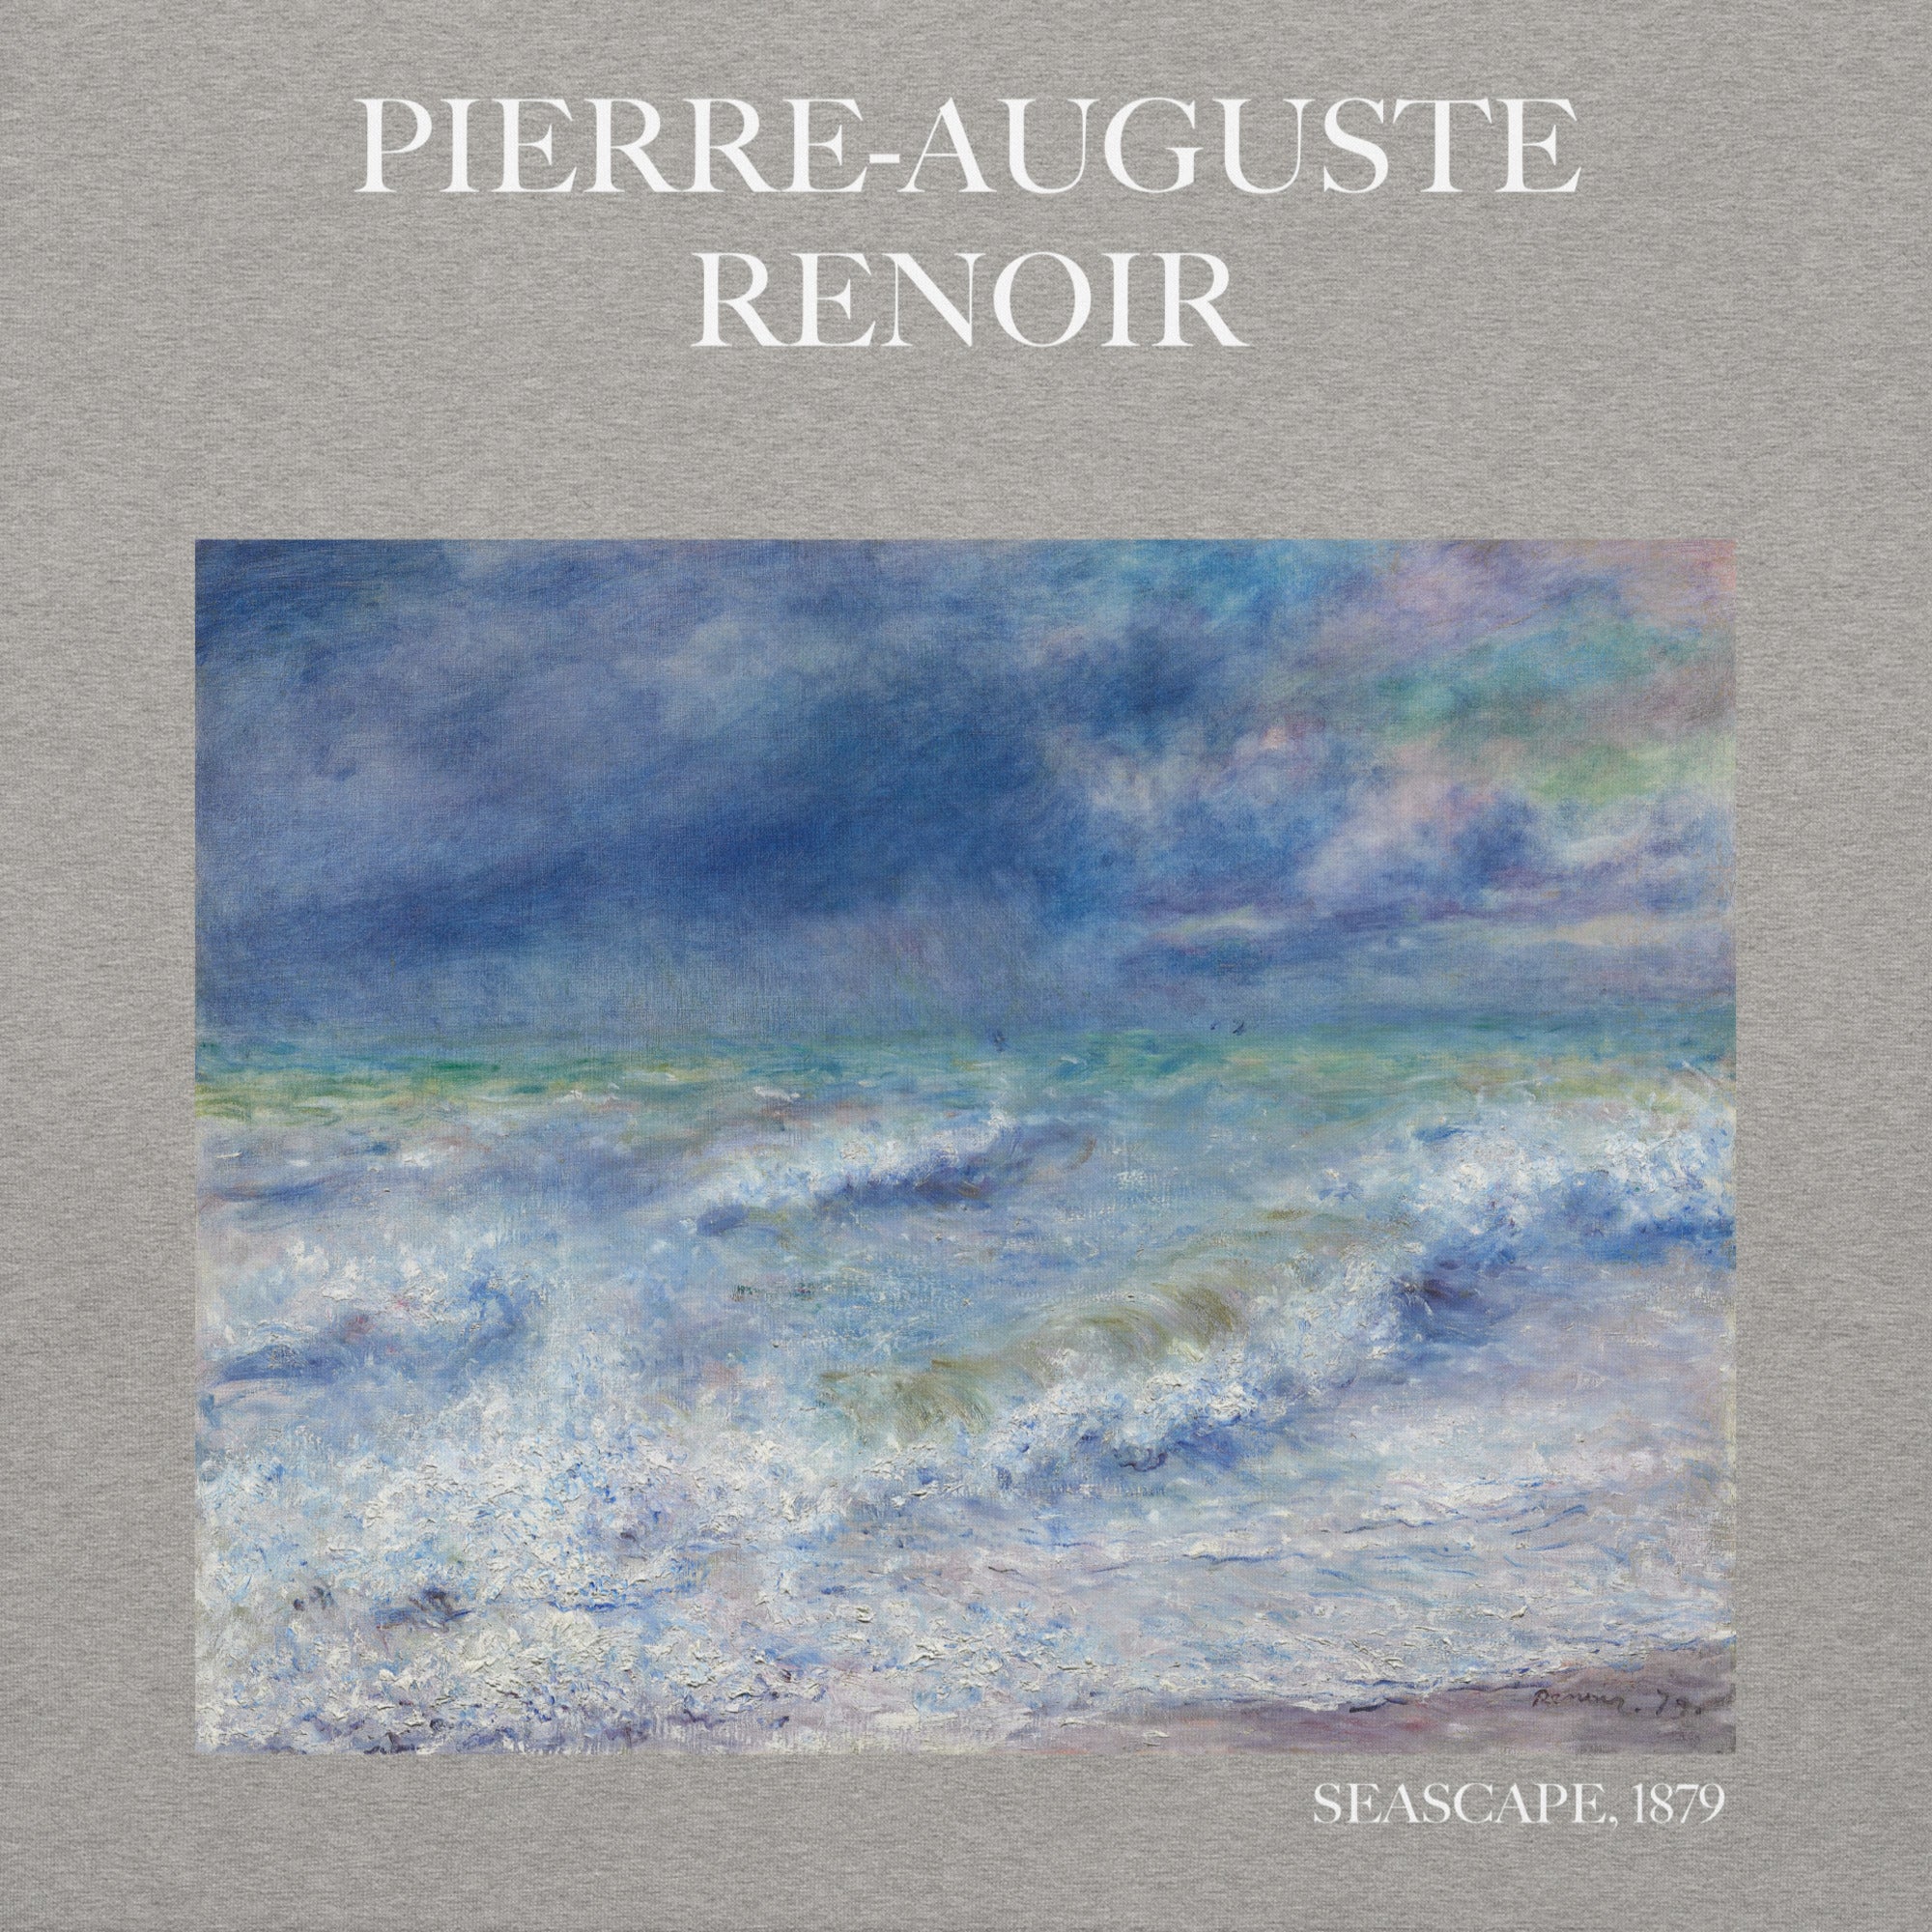 Pierre-Auguste Renoir 'Seascape' Famous Painting Hoodie | Unisex Premium Art Hoodie